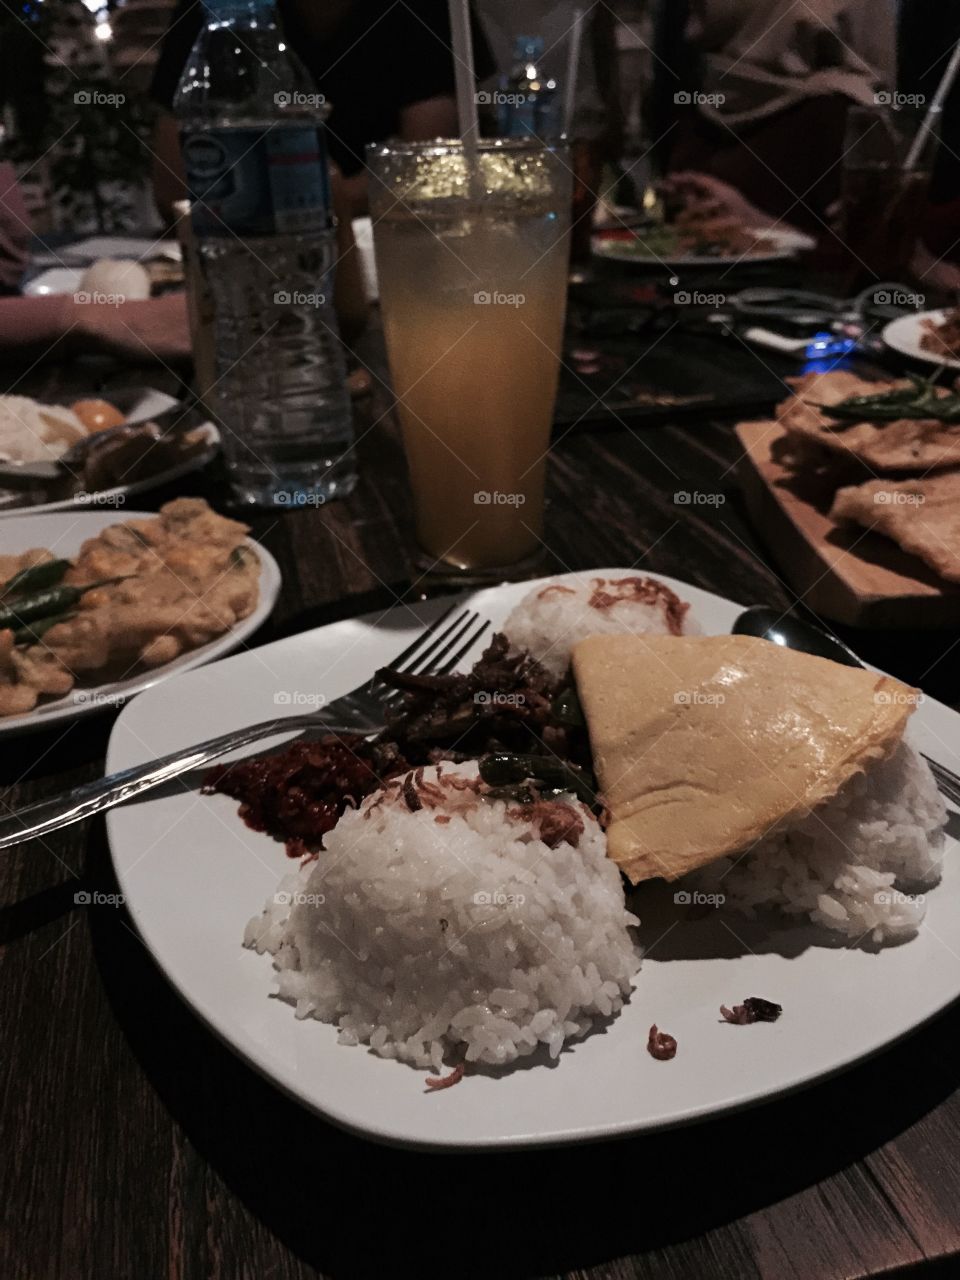 Sego Kucing (Cat Rice)
Indonesian foods
Legit